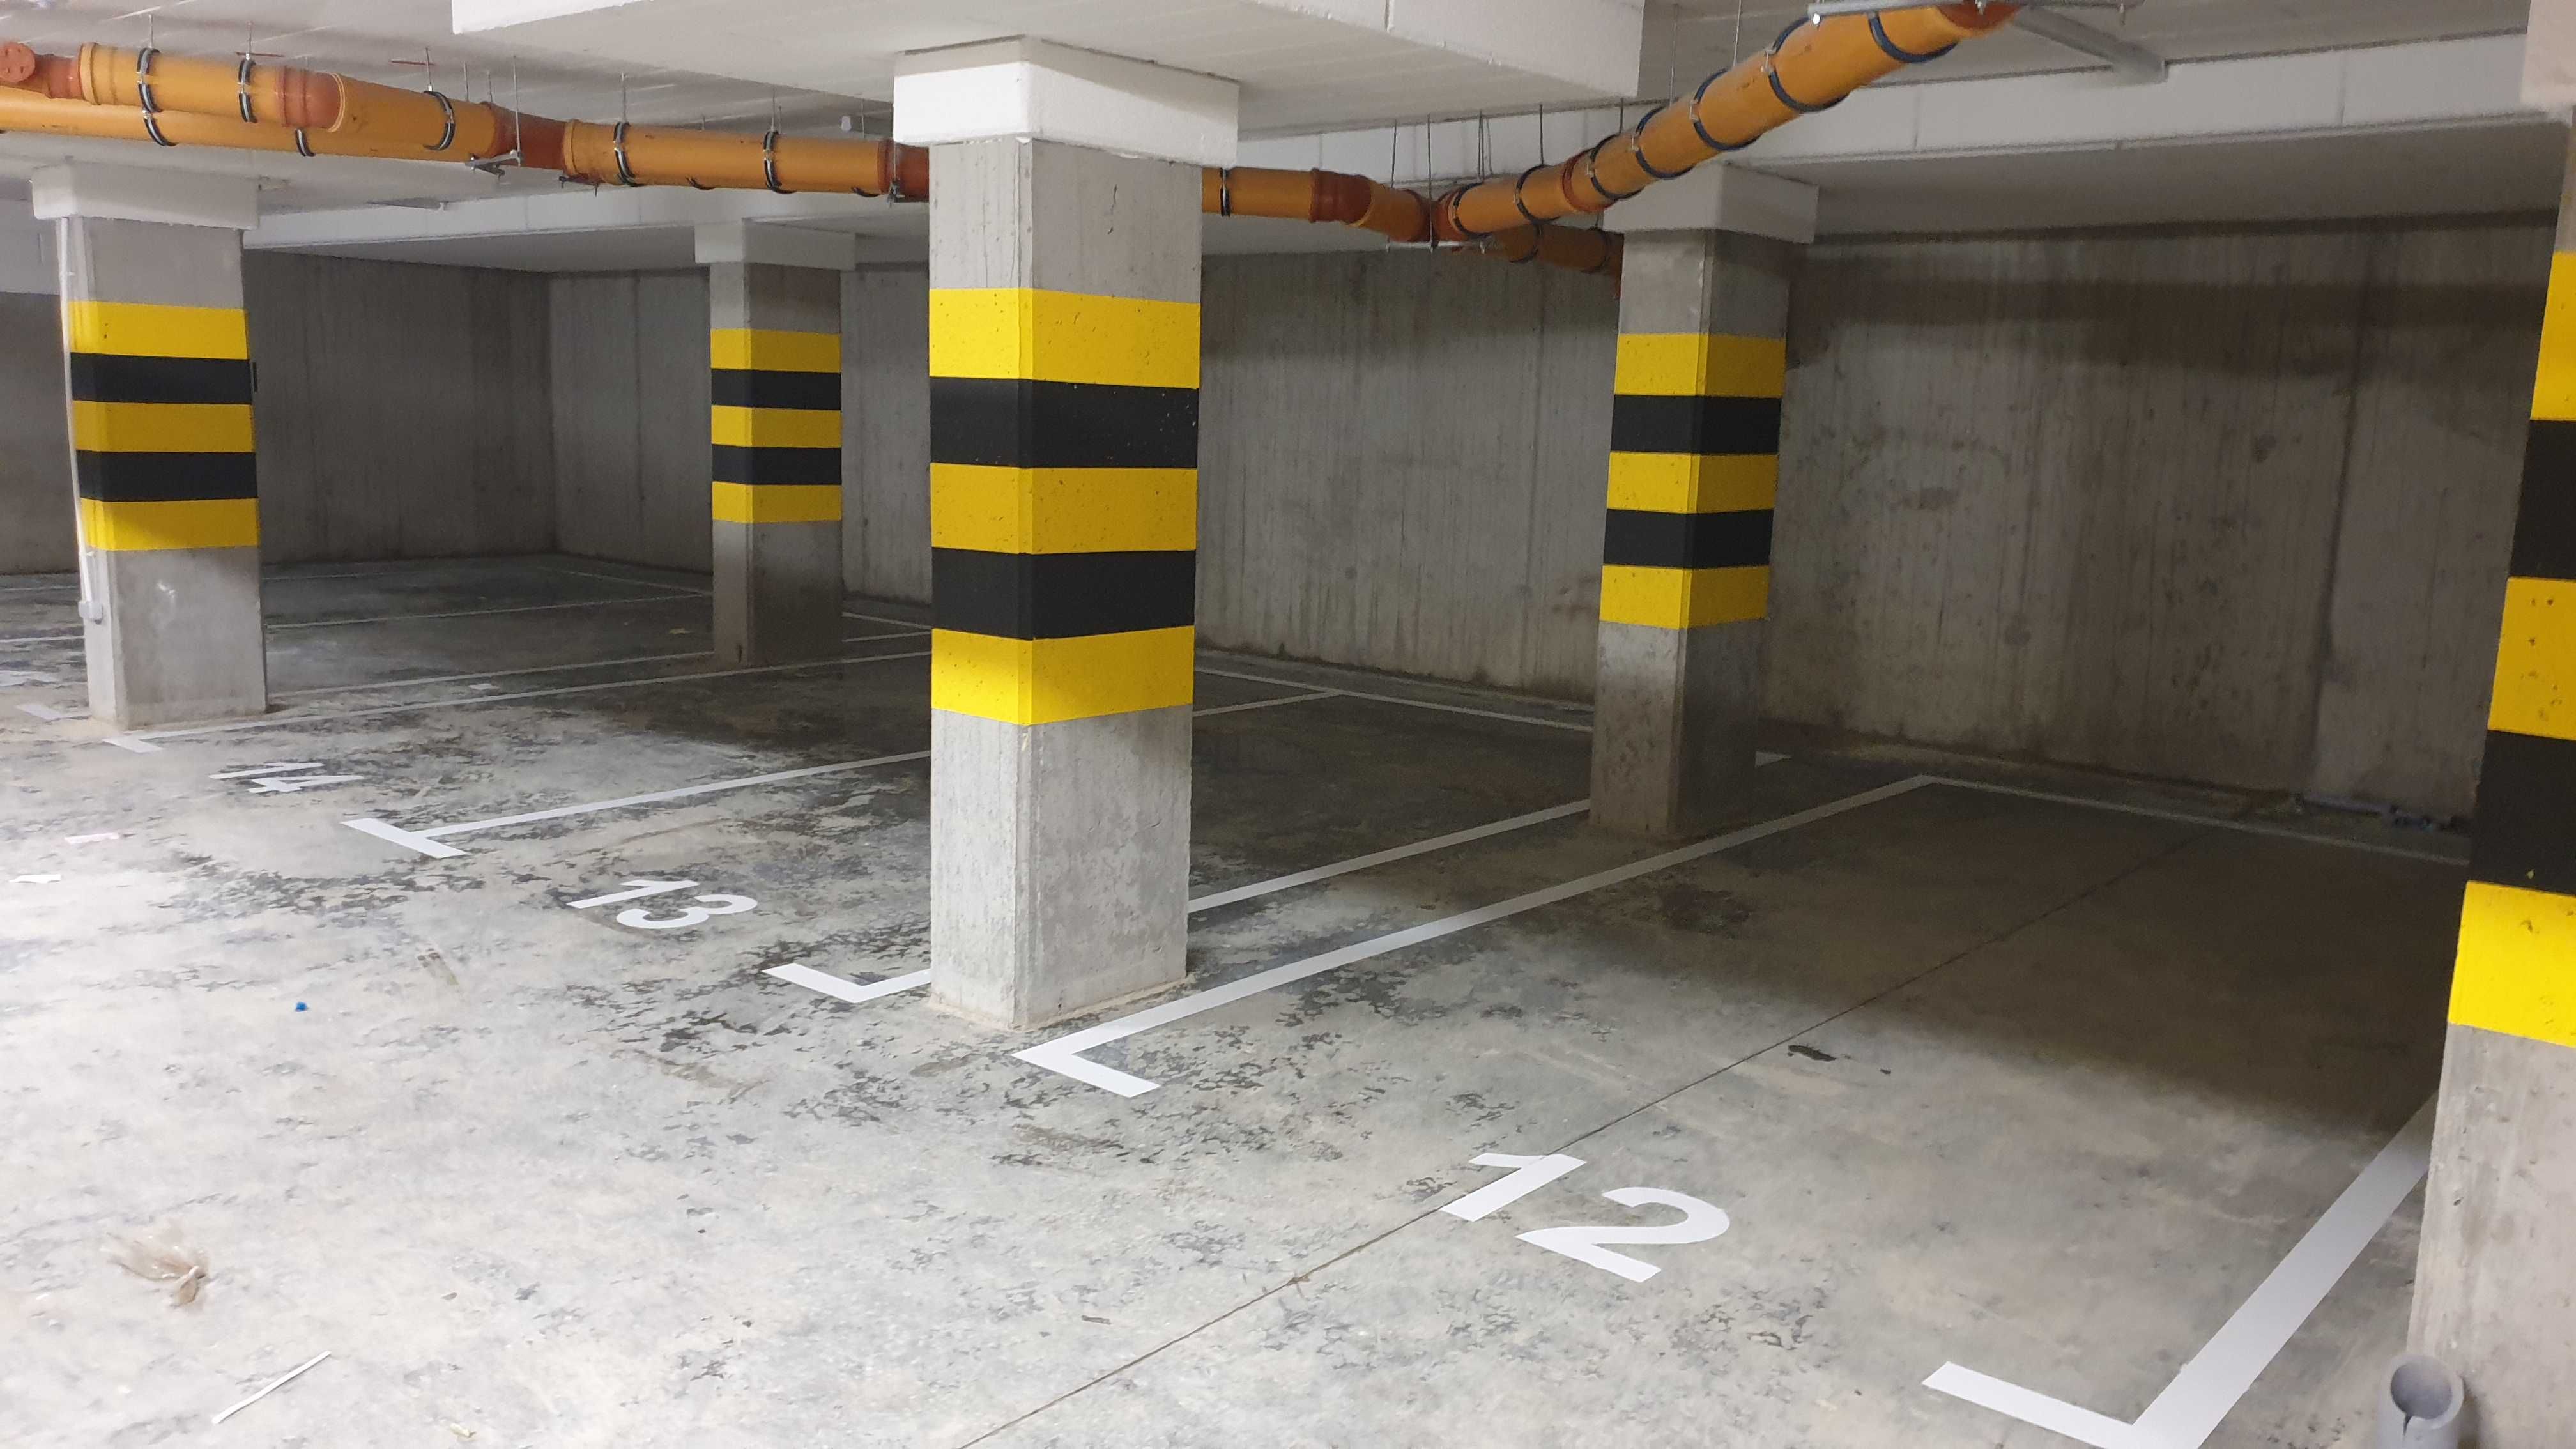 Malowanie linii oznakowanie poziome parking garaże podziemne magazyn